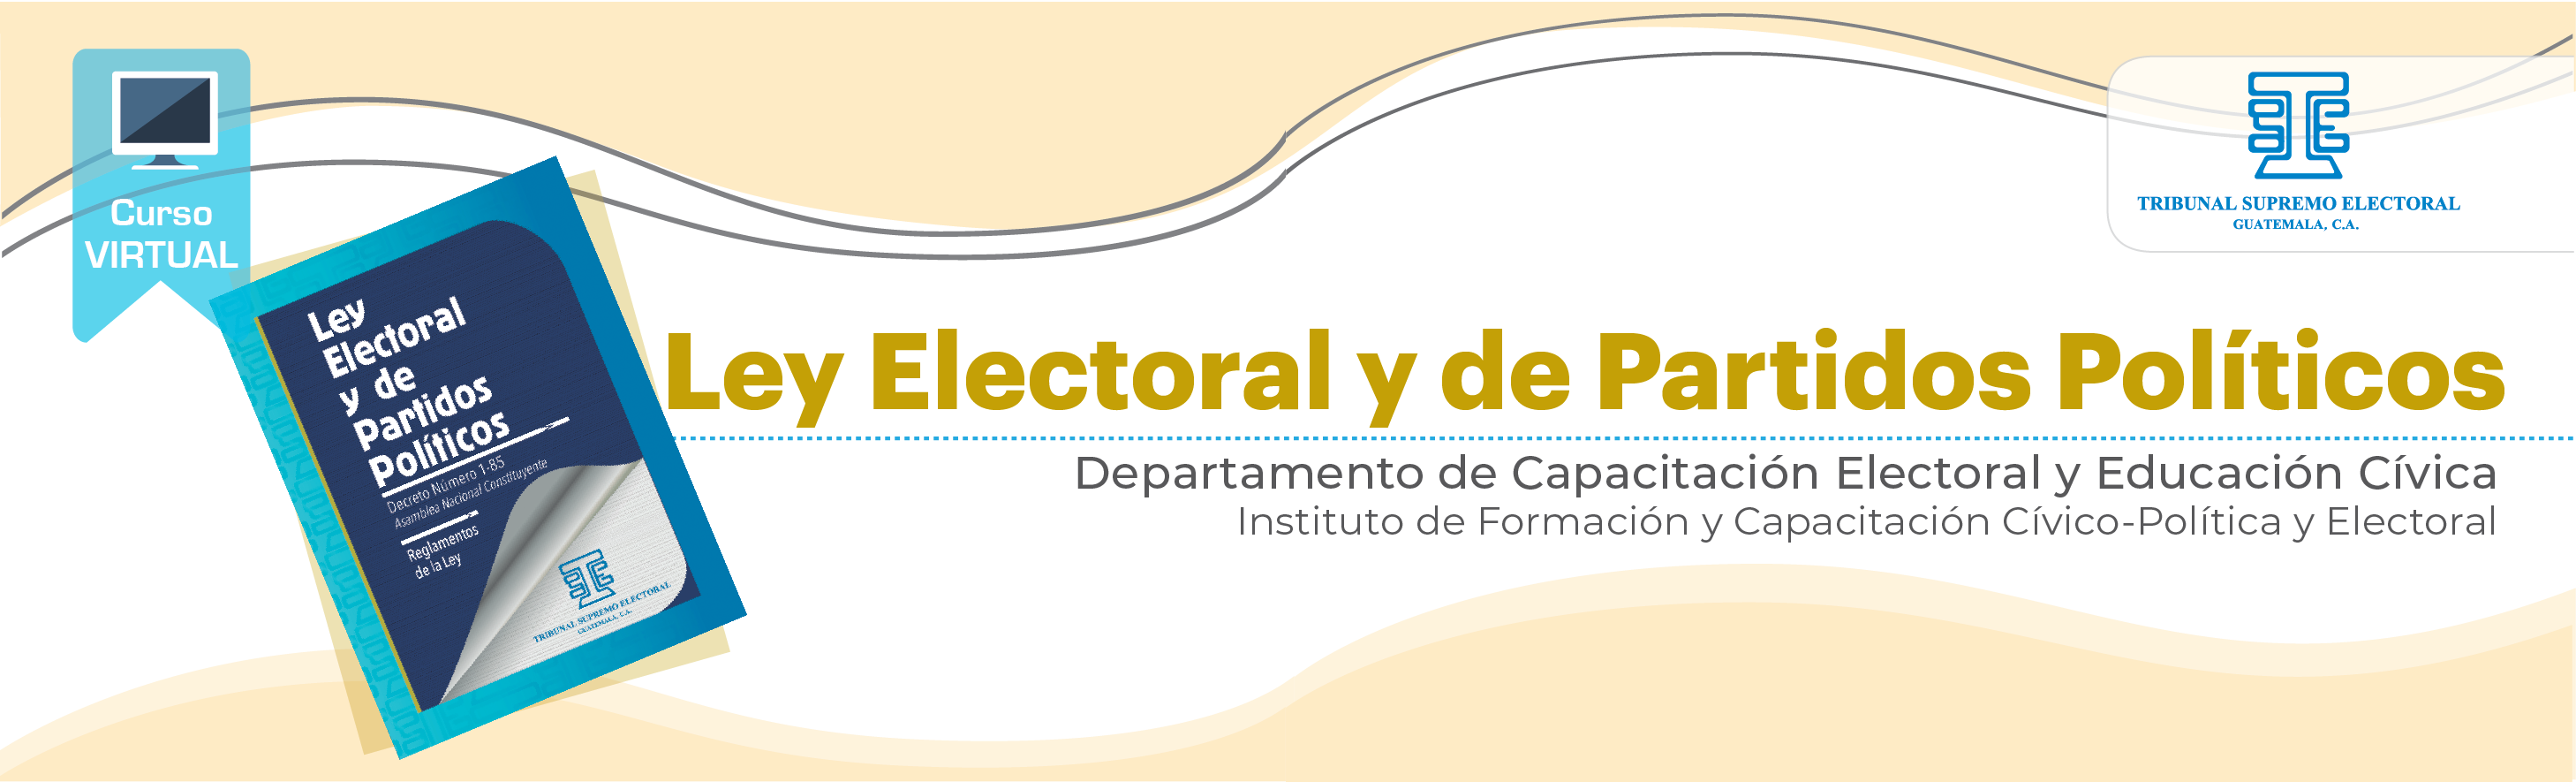 Ley Electoral y de Partidos Políticos 22 N